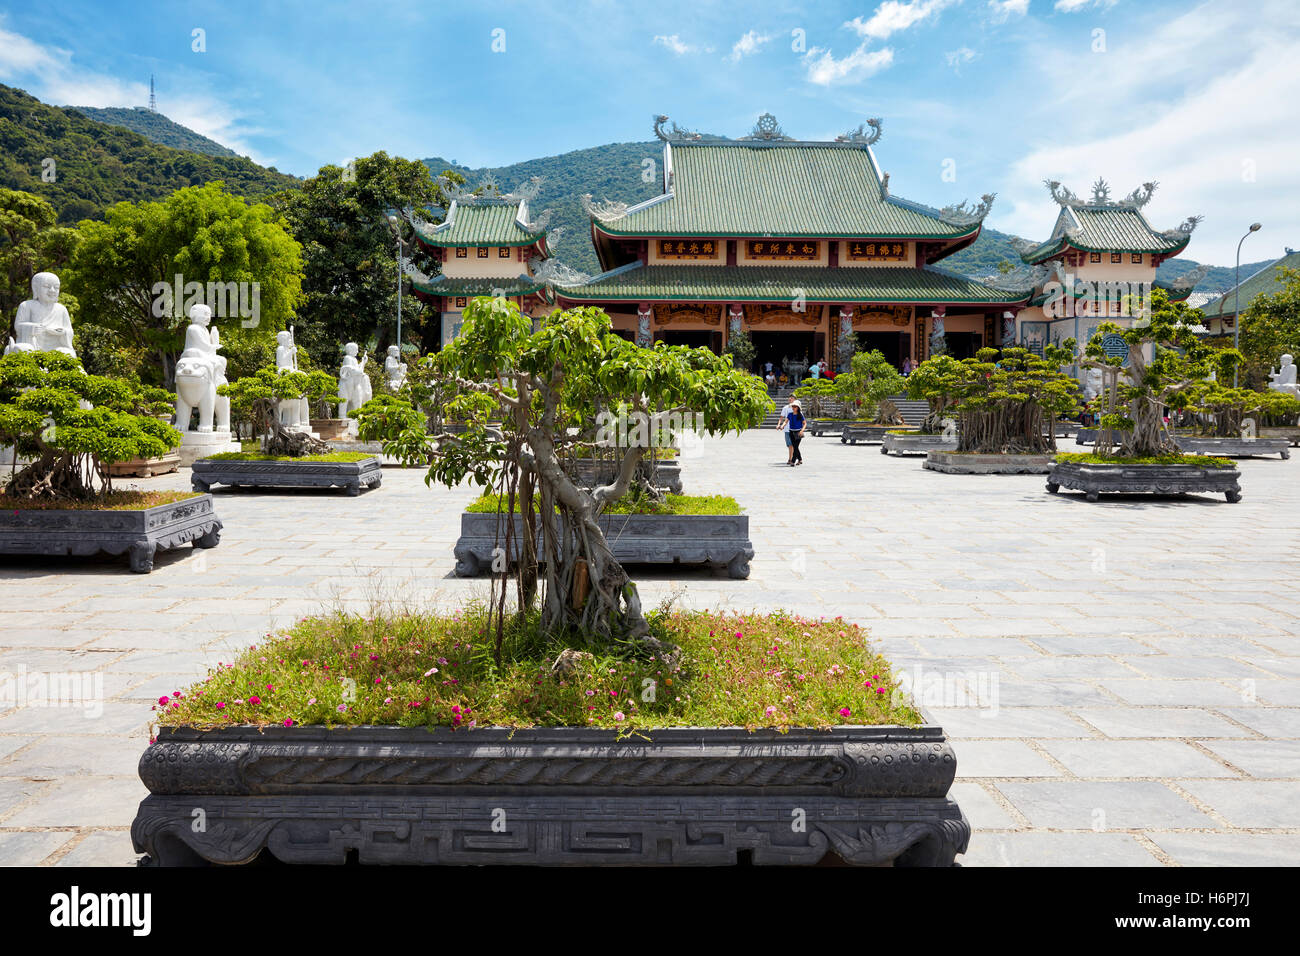 Bonsai garden at Linh Ung Pagoda, Da Nang, Vietnam. Stock Photo